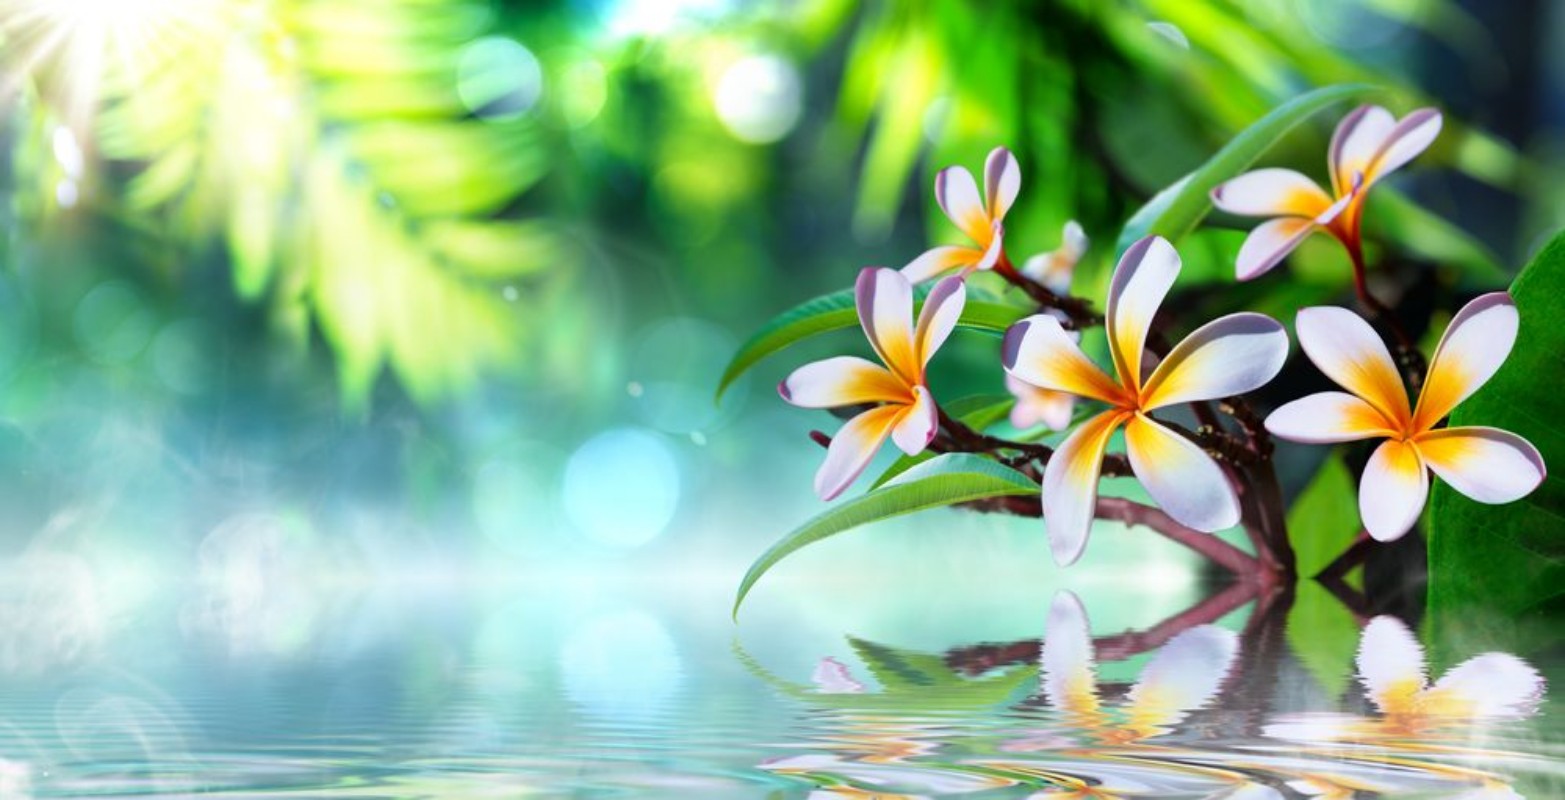 Afbeeldingen van Zen garden with frangipani and vapour on water